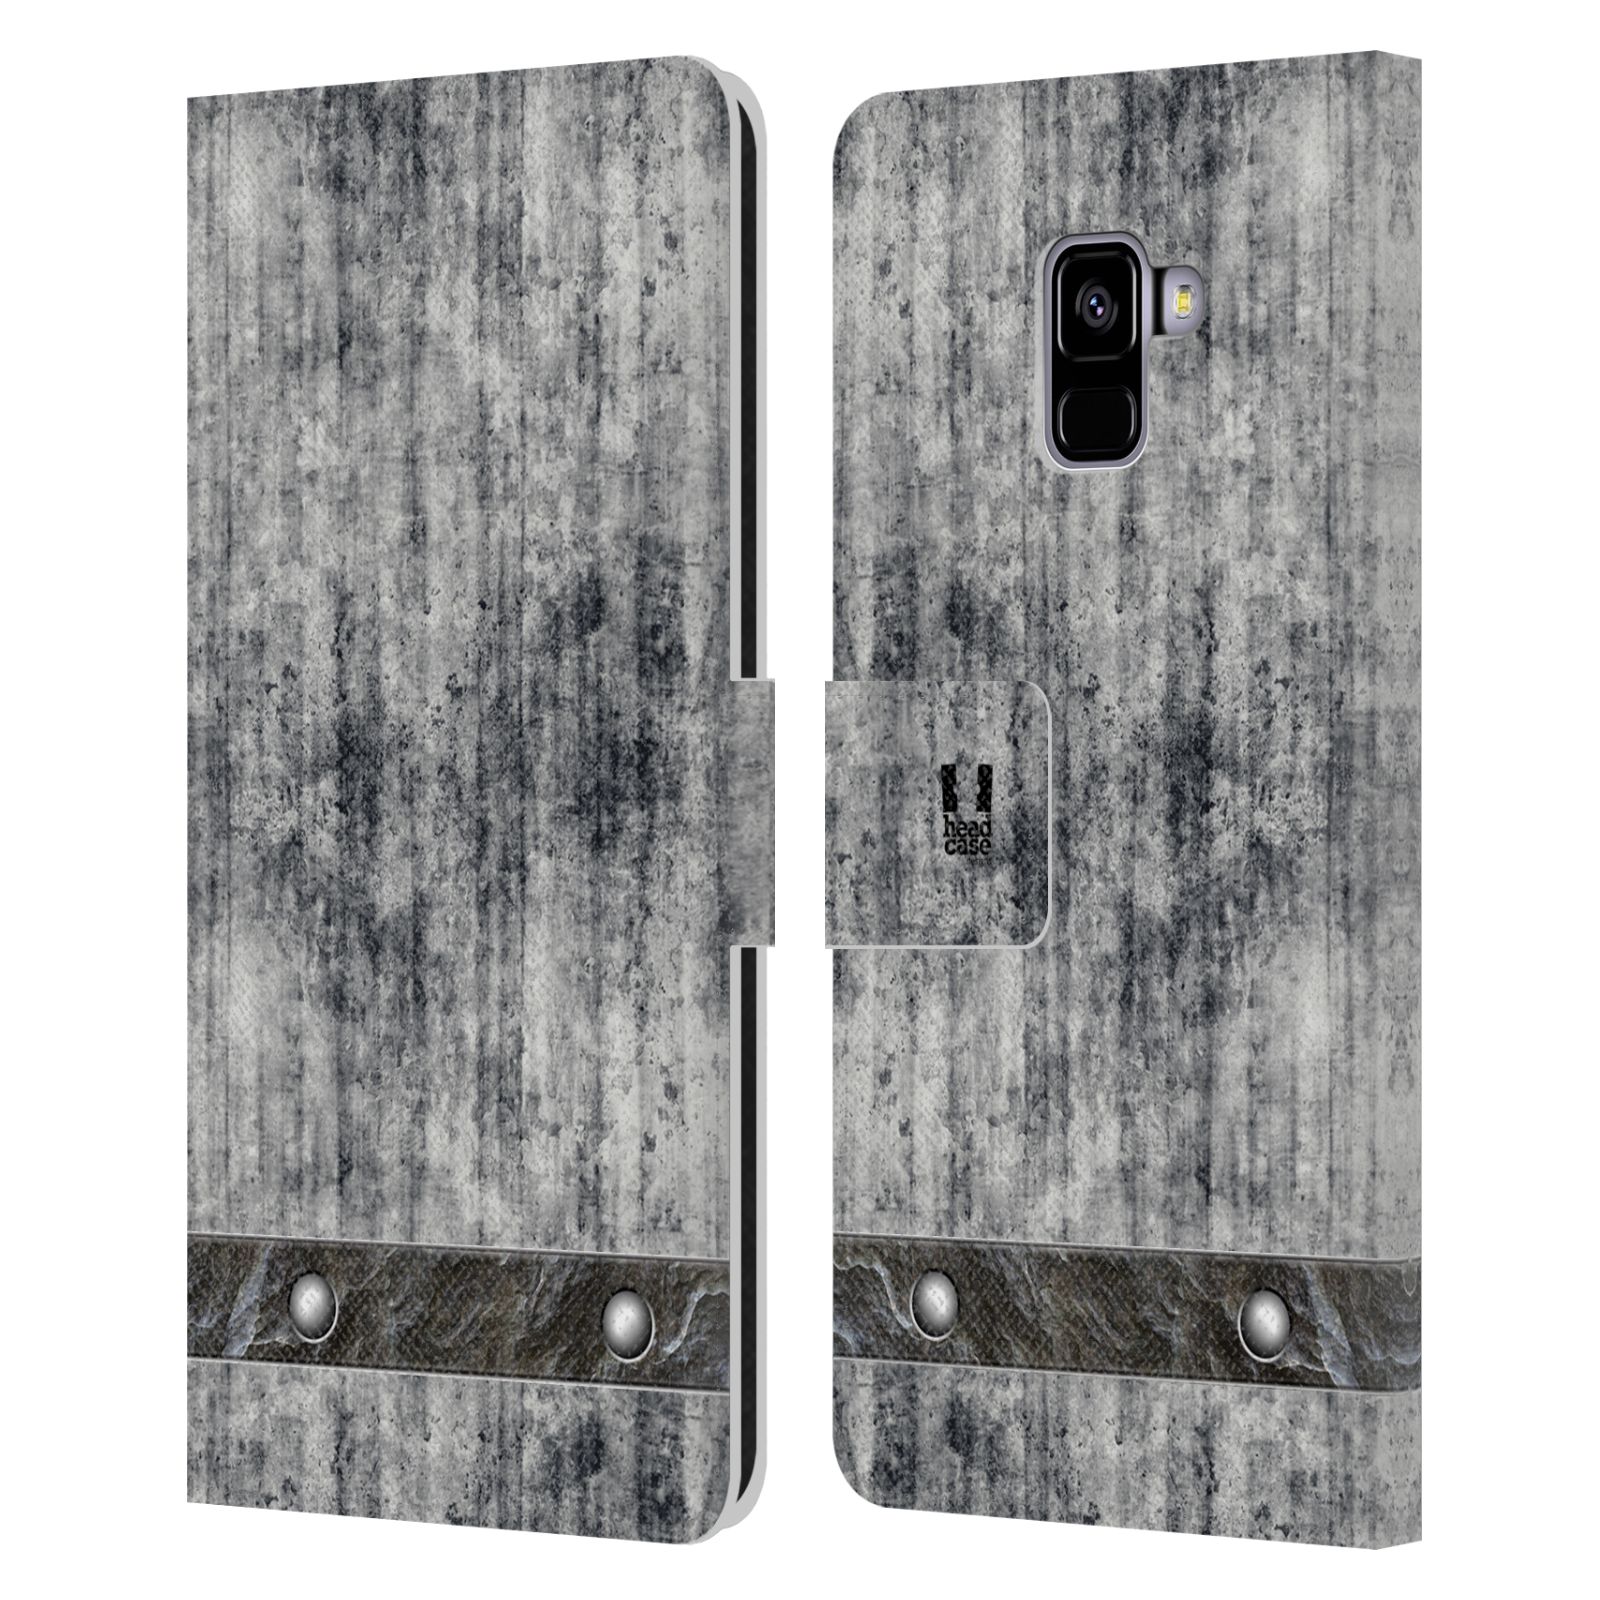 Pouzdro pro mobil Samsung Galaxy A8+ 2018 - Stavební textura šedý beton